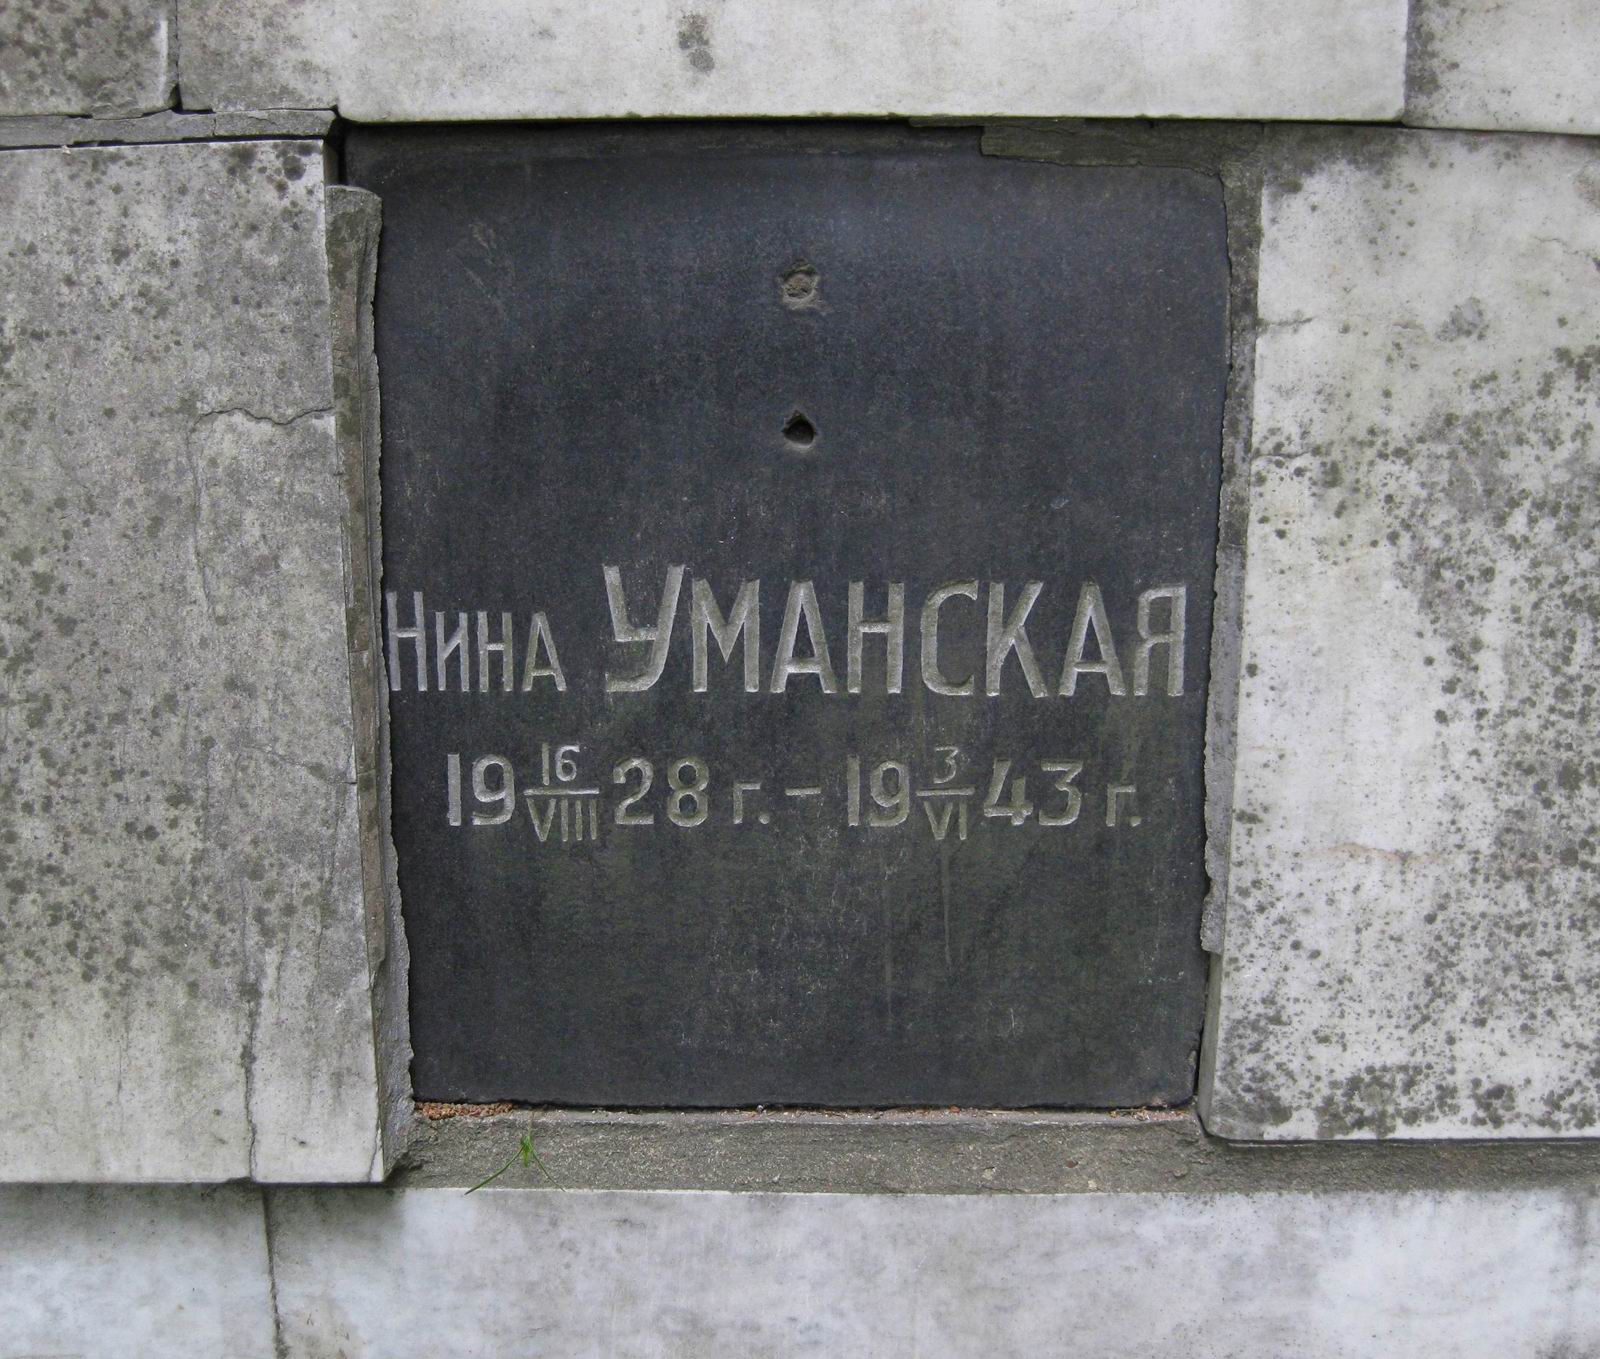 Плита на нише Уманской Н.К. (1928-1943), на Новодевичьем кладбище (колумбарий [1]-3-2). Нажмите левую кнопку мыши чтобы увидеть общий вид.